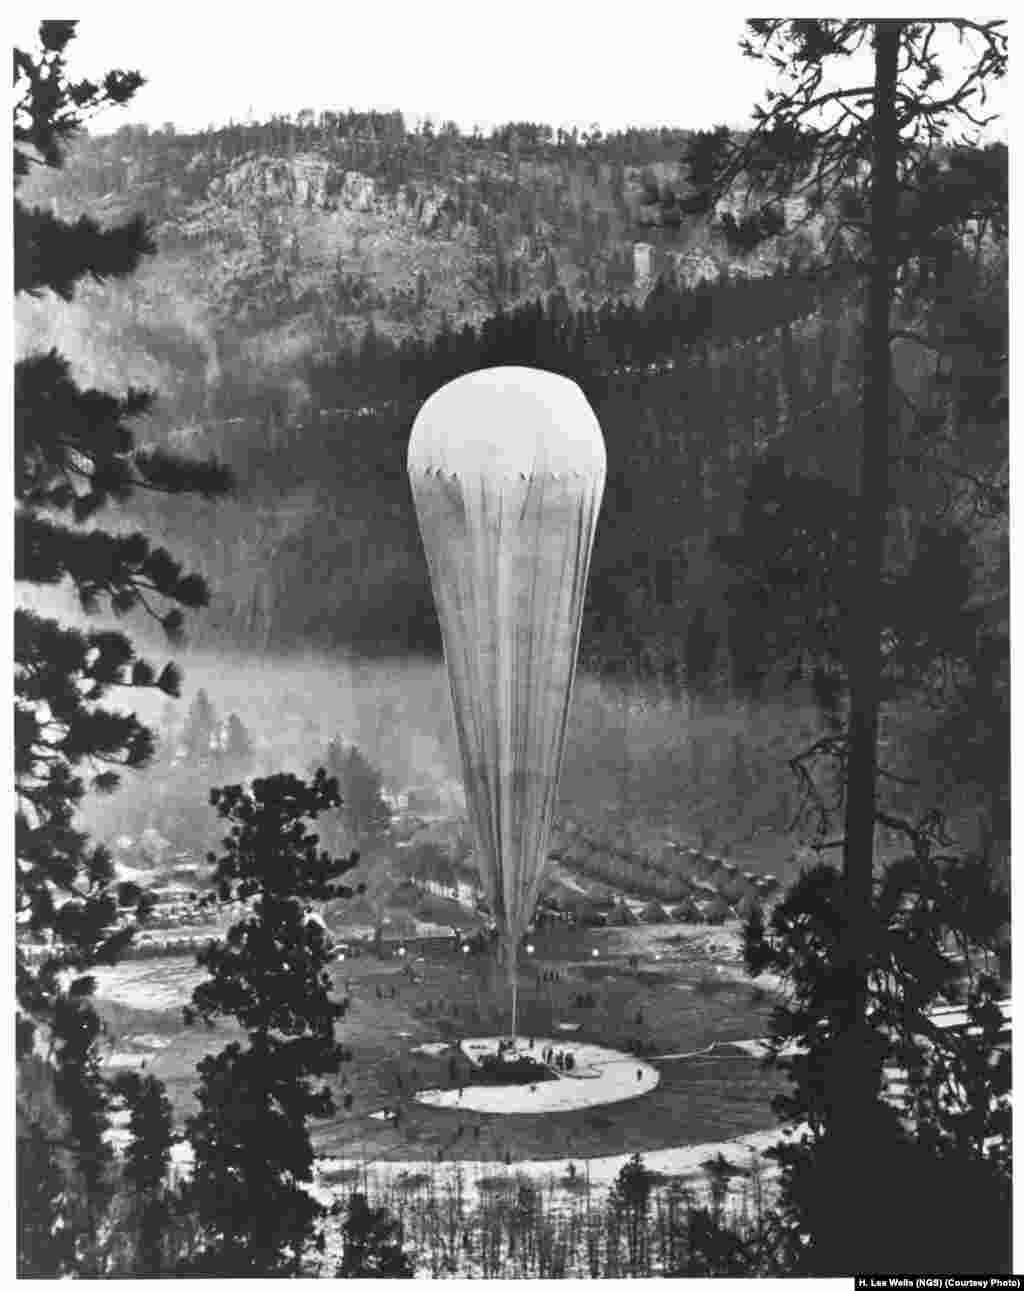 Воздухоплаватель Explorer II армейской авиации США готовится подняться более чем на 22 тысячи метров в стратосферу. Воздухоплаватель стартовал из города Рапид-сити в Южной Дакоте 11 ноября 1935 года.